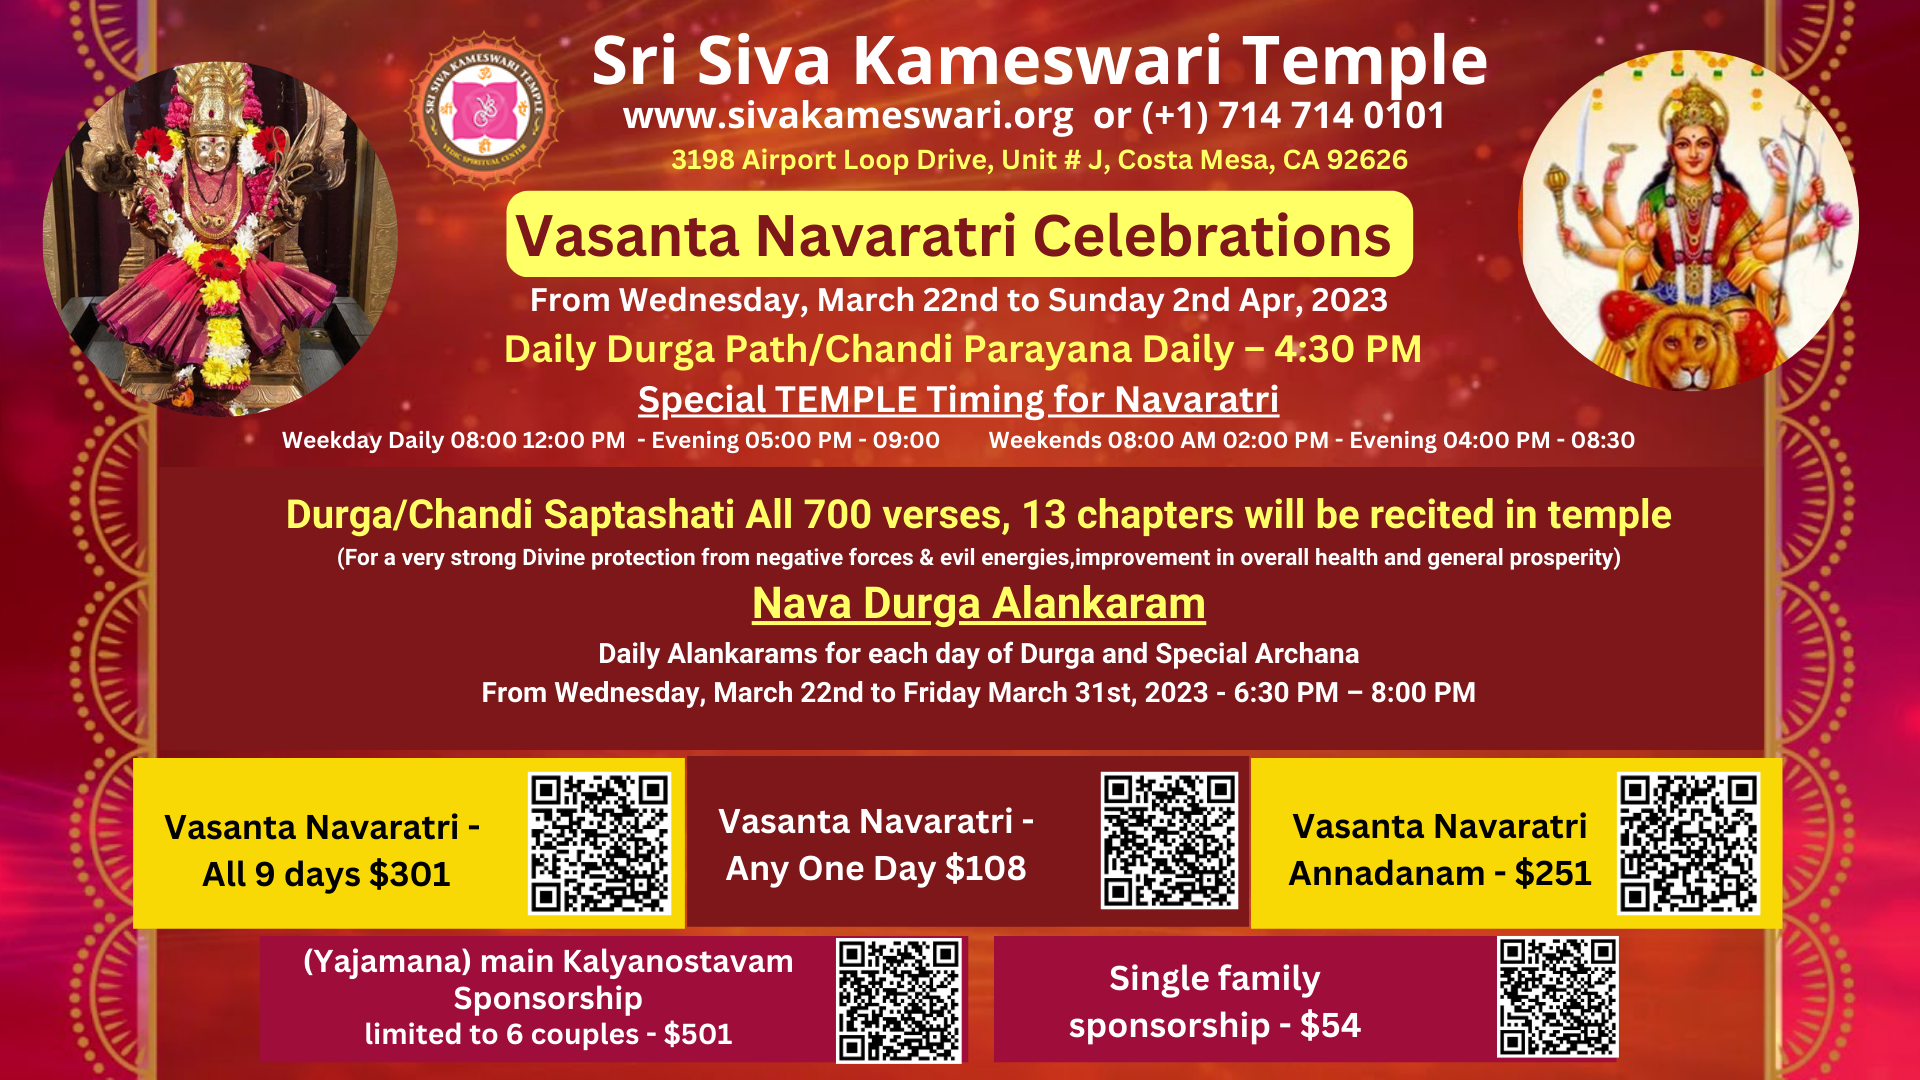 Vasanta Navaratri Celebrations